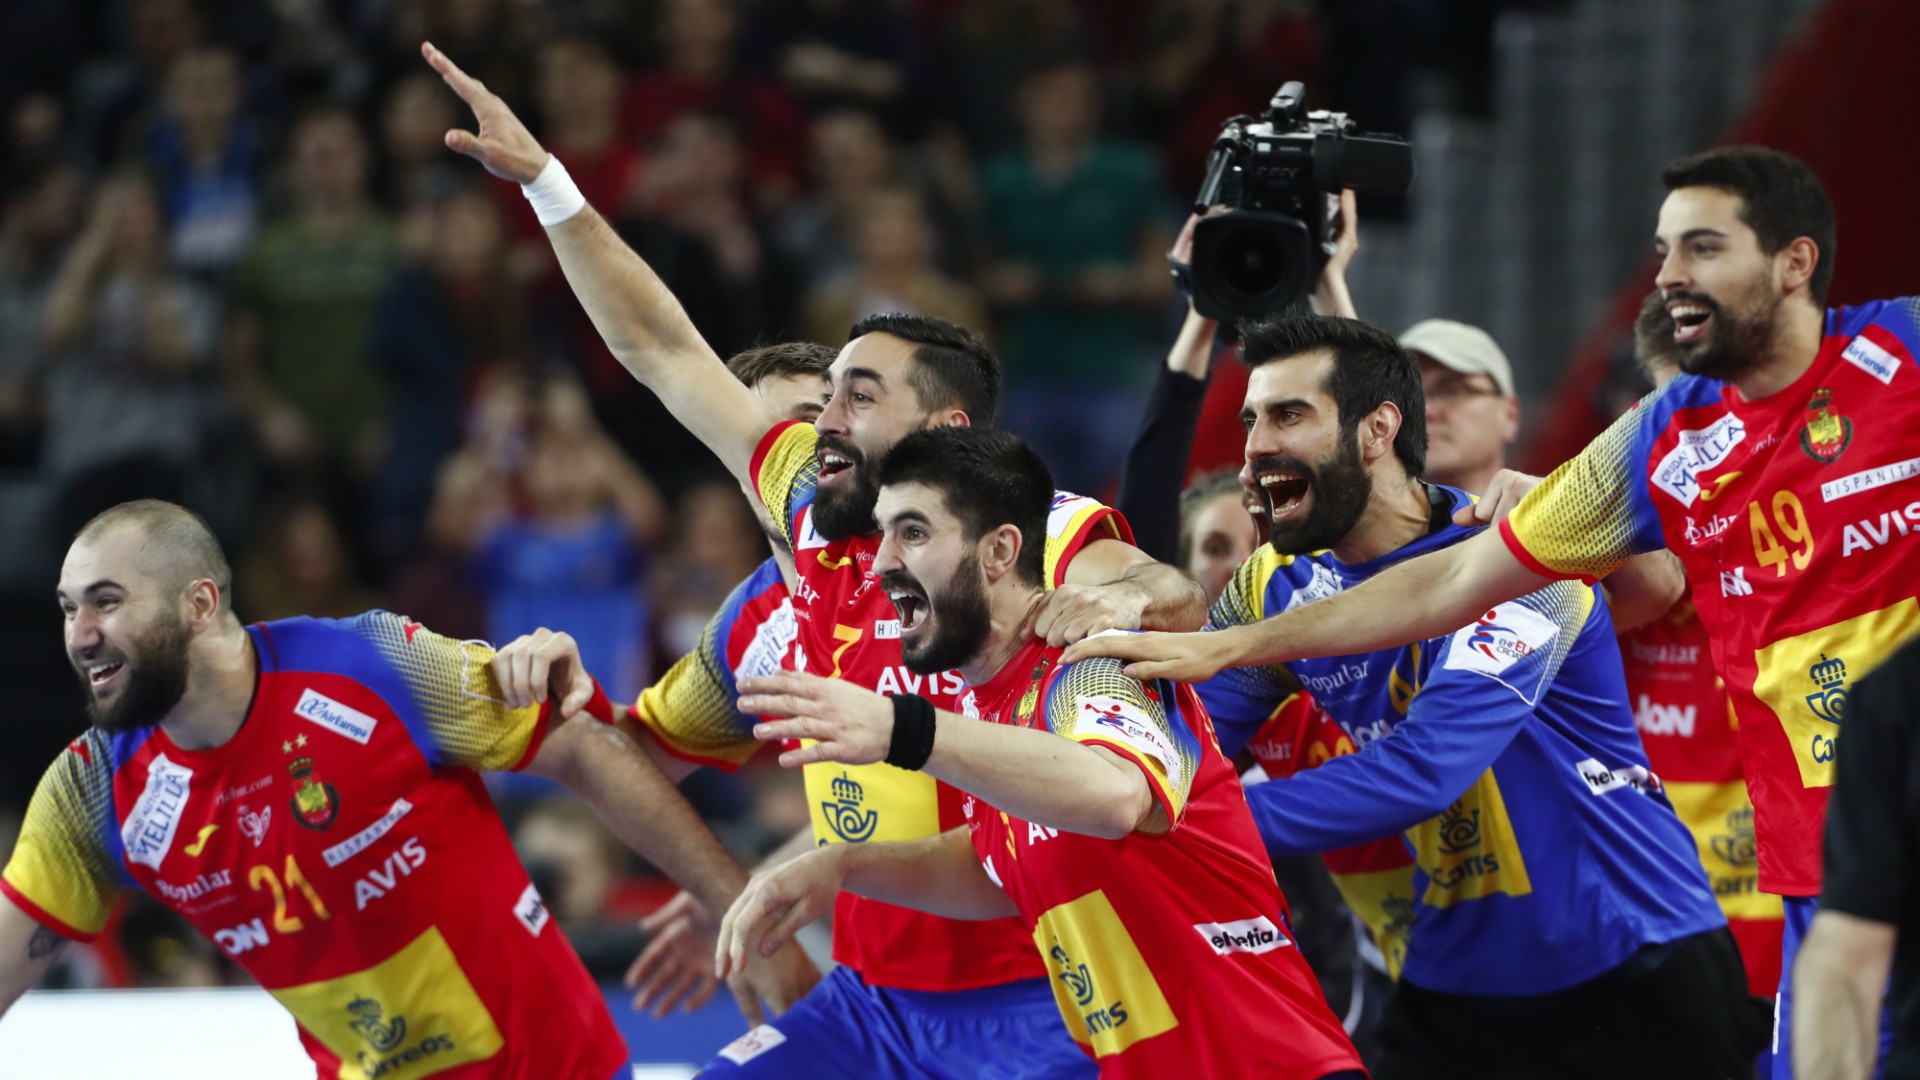 La selección española de balonmano gana su primer campeonato de Europa